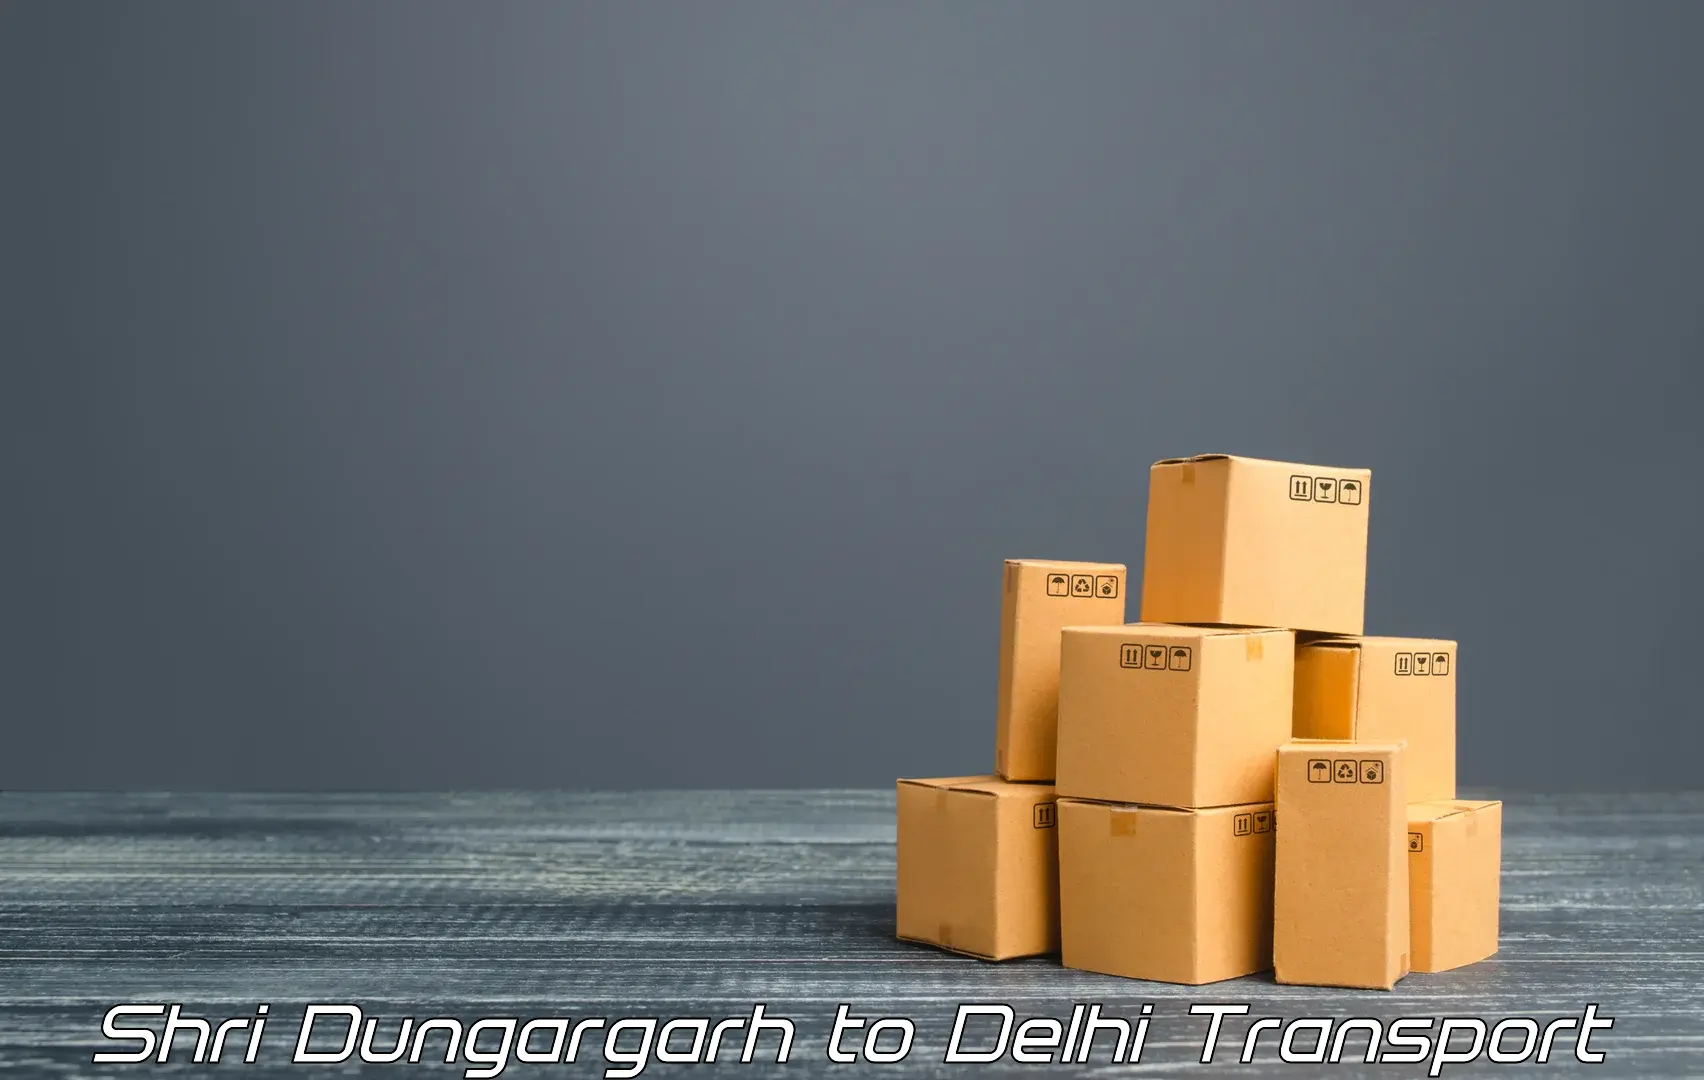 Shipping partner in Shri Dungargarh to Delhi Technological University DTU